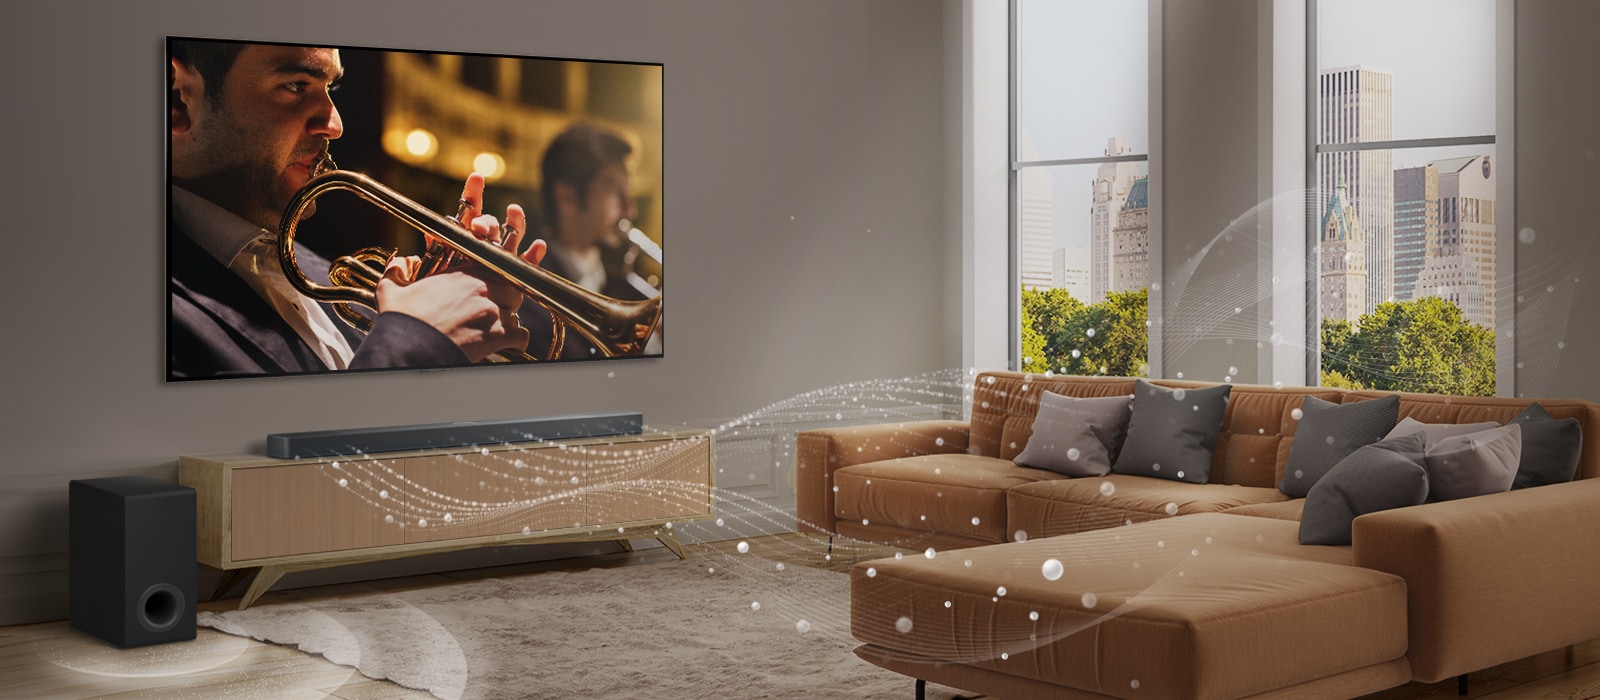 LG Soundbar, LG TV i niskotonac u moderno uređenom gradskom stanu. LG Soundbar emituje tri grane zvučnih talasa, napravljene od belih kapljica koje plutaju po podu. Pored Soundbar-a je niskotonac koji stvara zvučni efekat odozdo. 